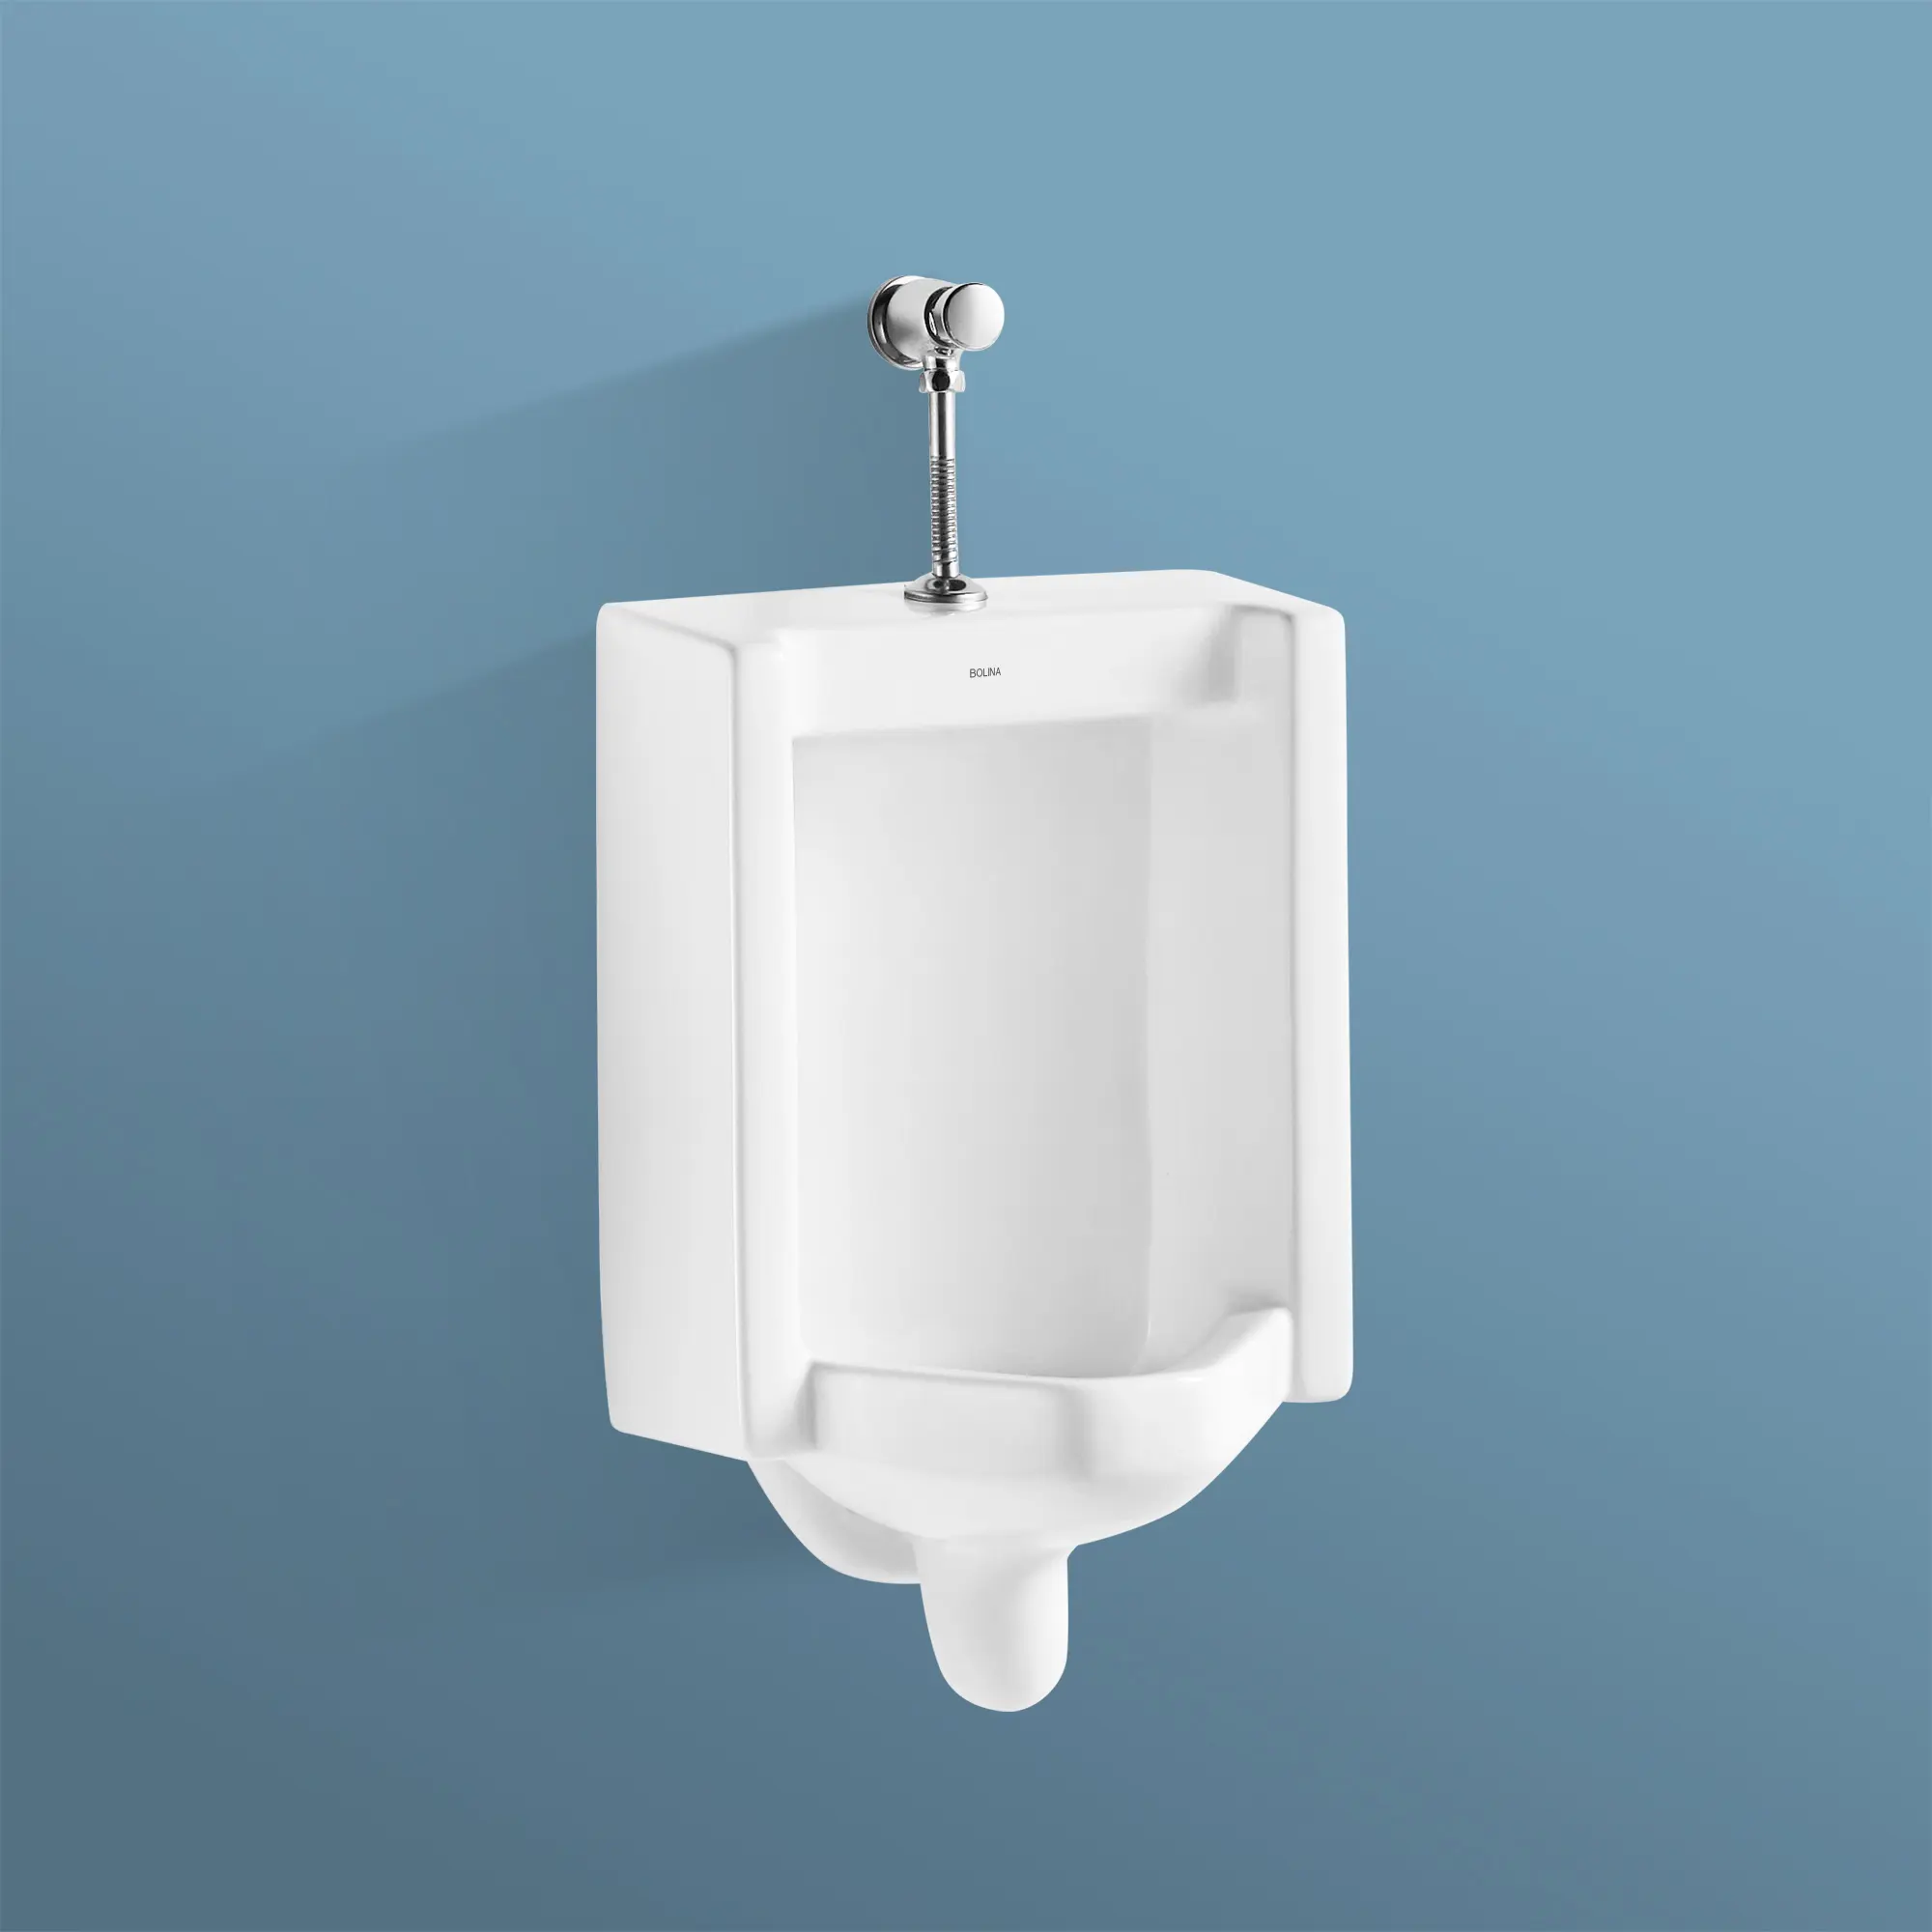 Bolina Offres Spéciales U1100 urinoir à économie d'eau mural moderne simple et élégant